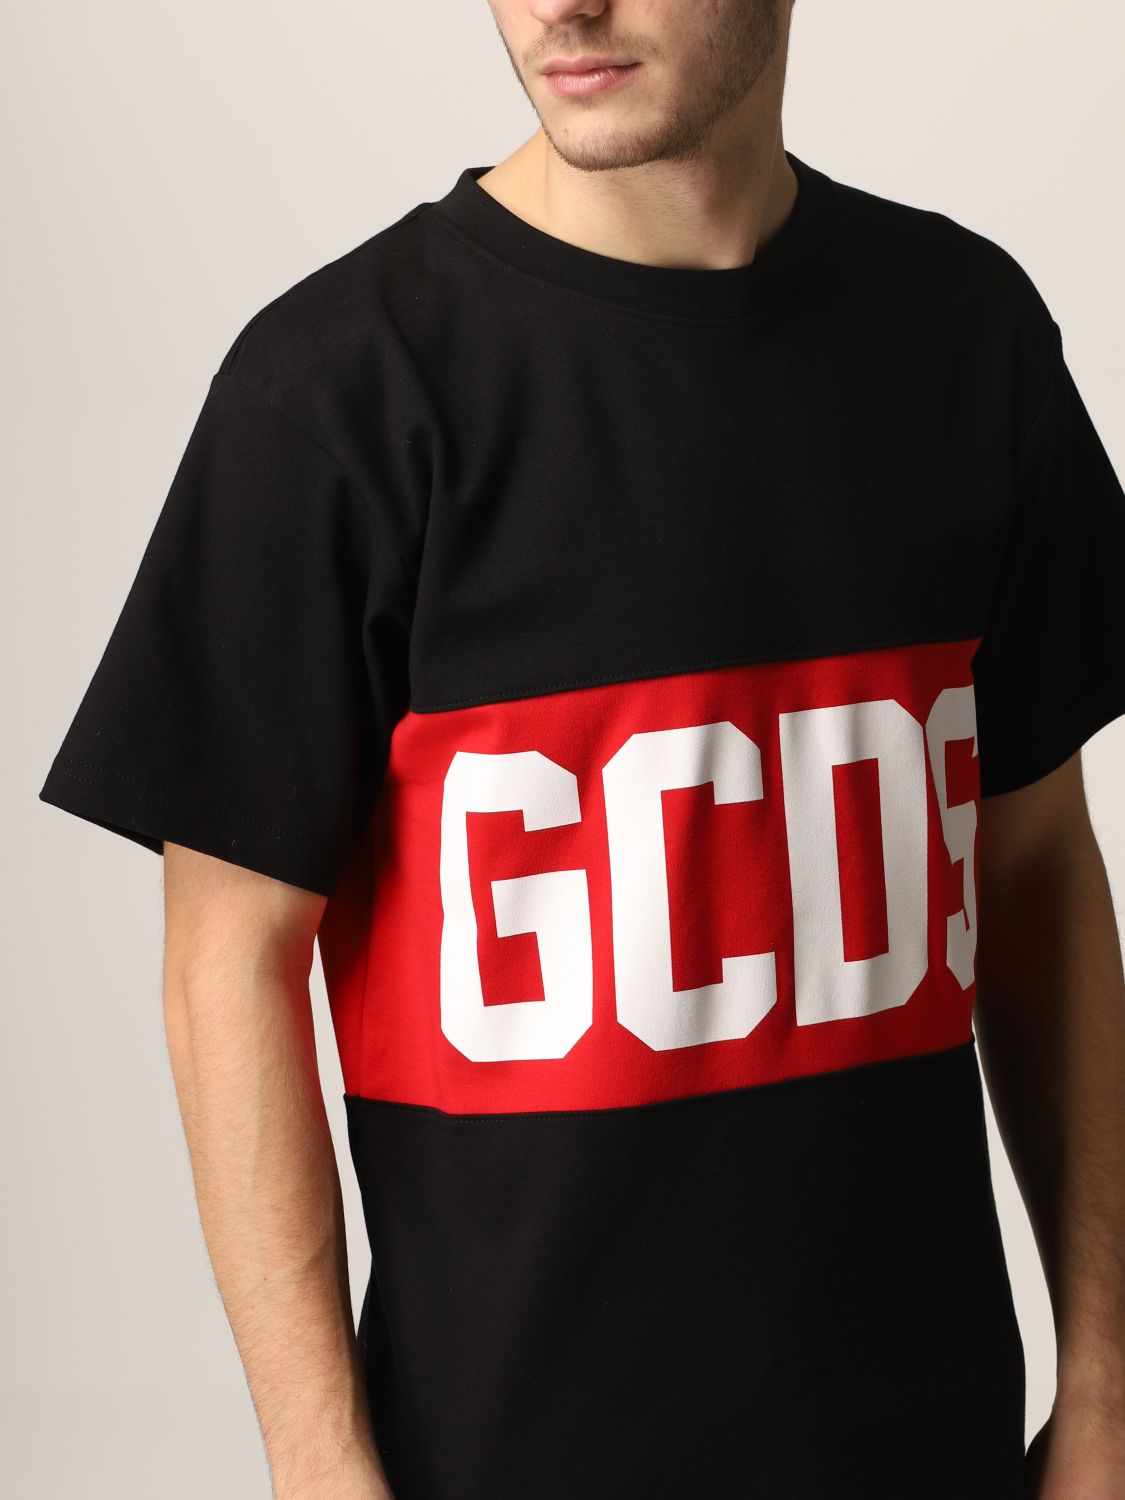 Tシャツ Gcds: Tシャツ Gcds メンズ ブラック 5